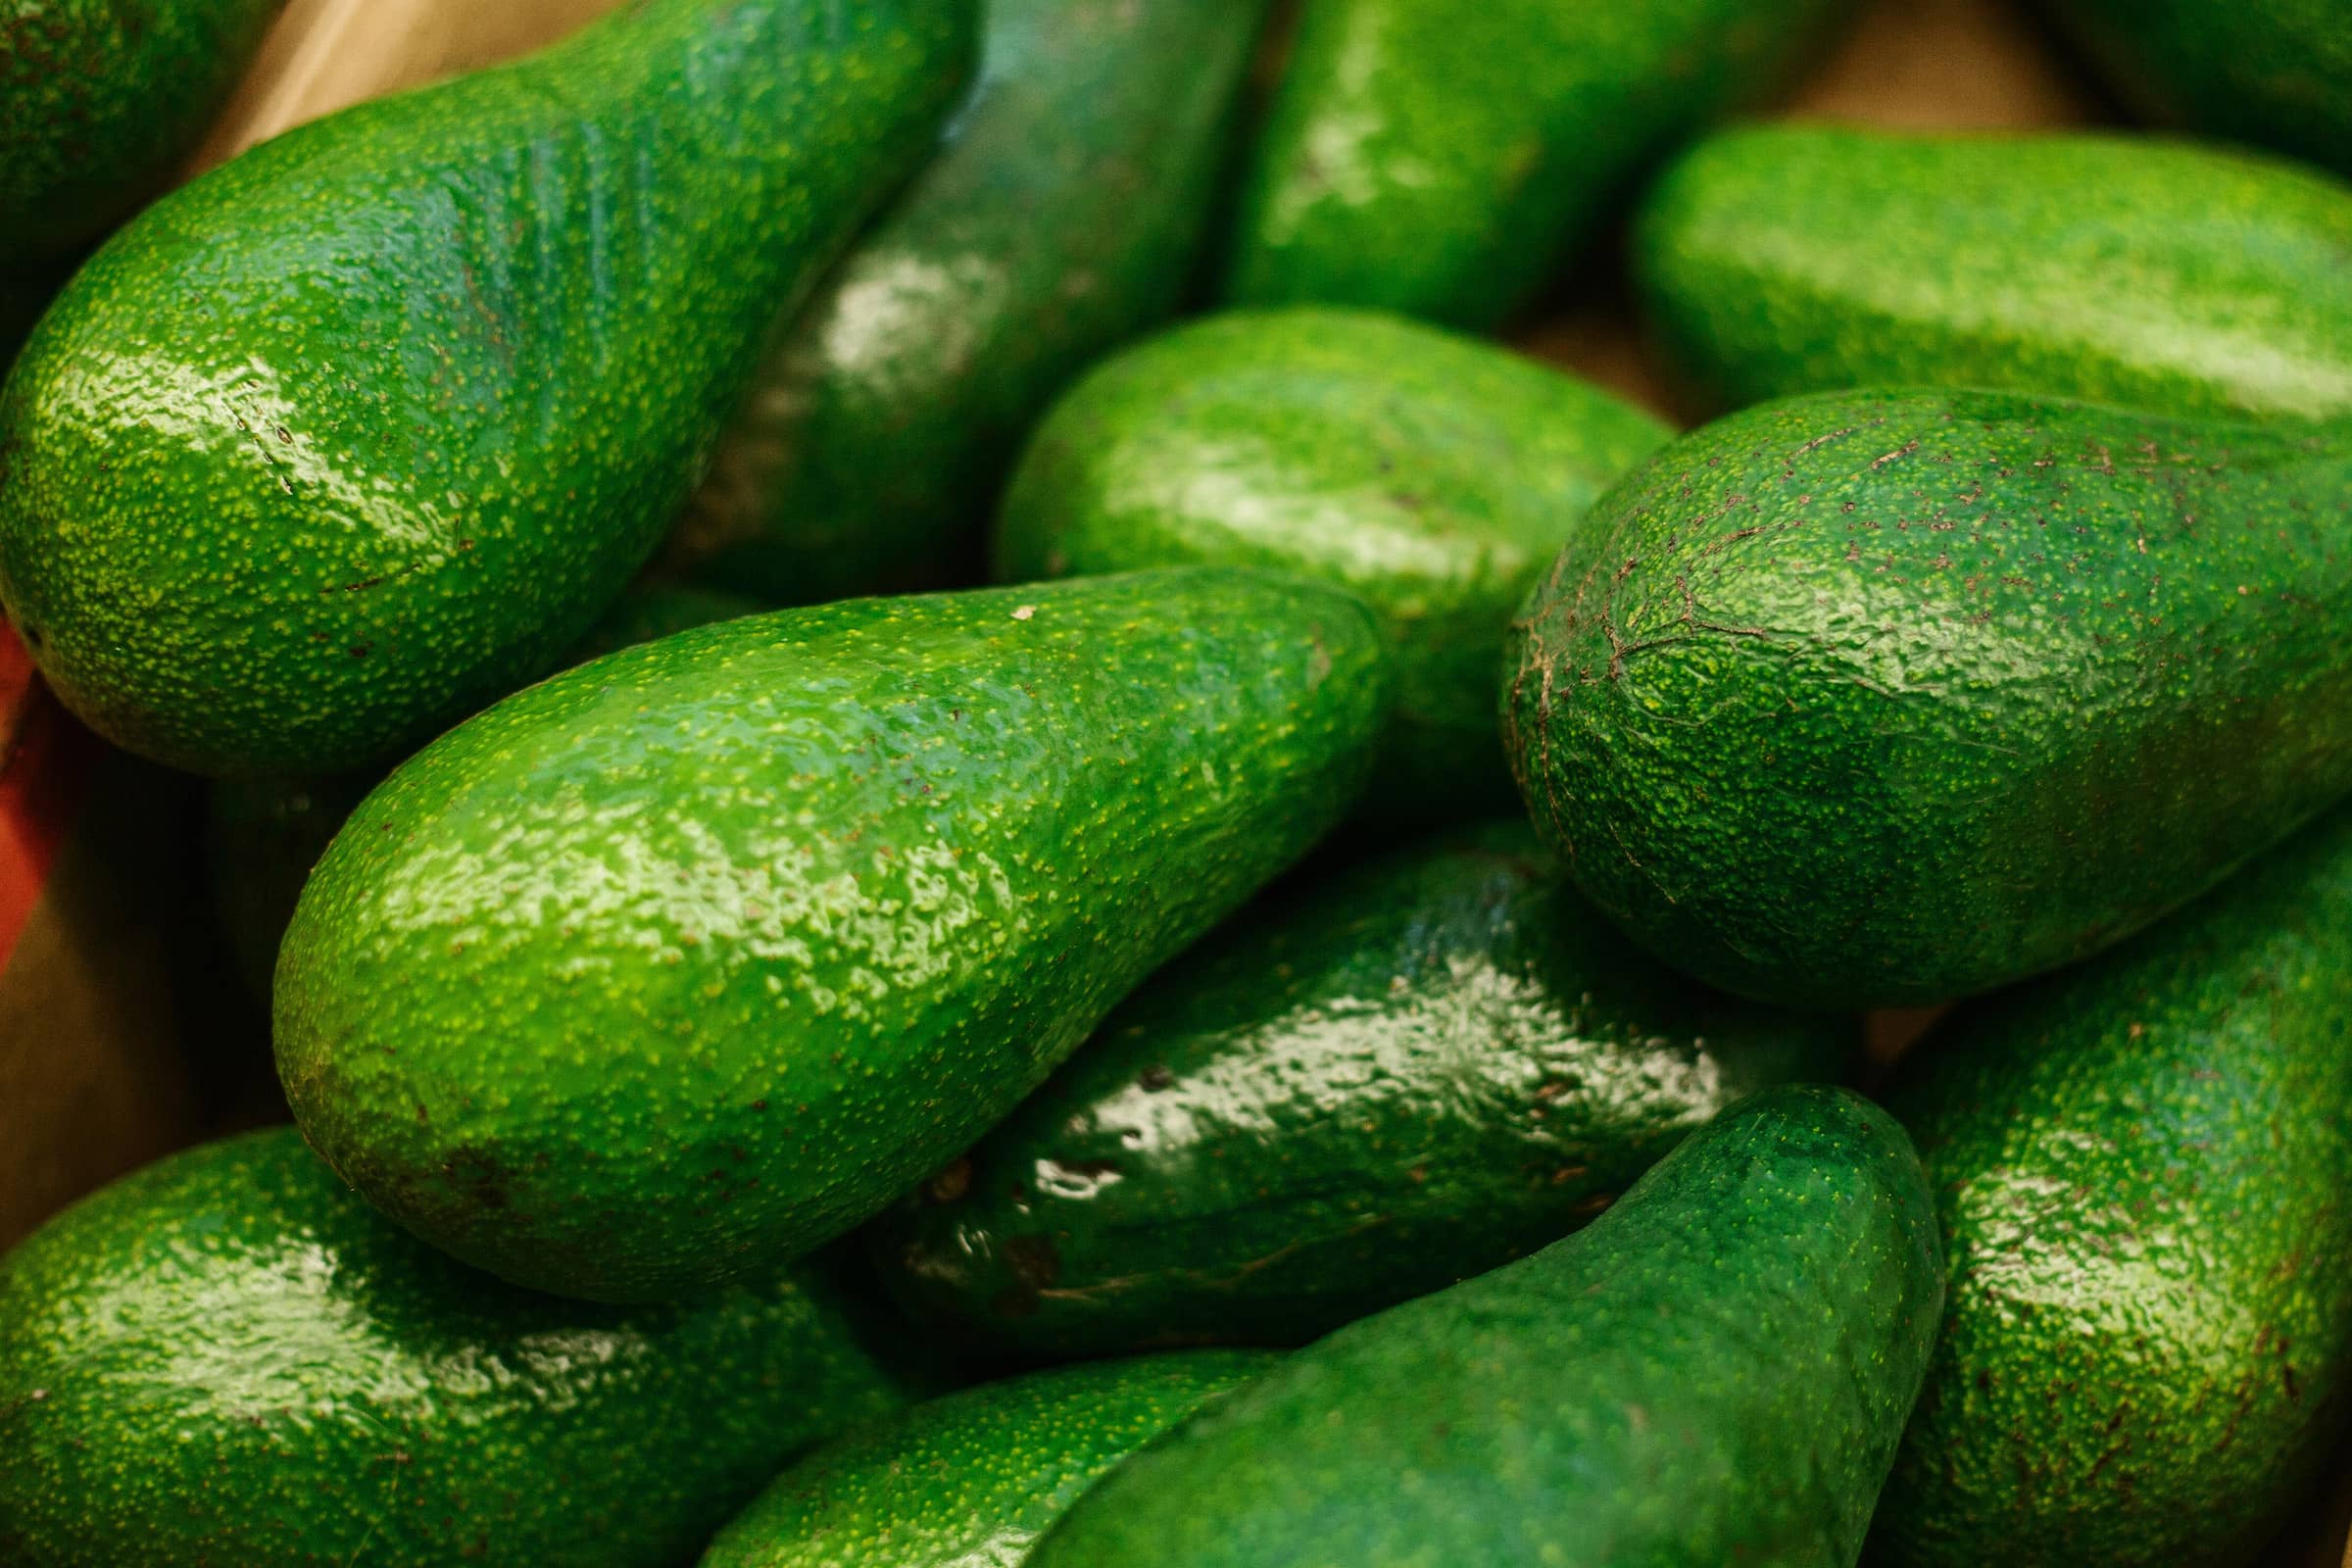 An Avocado A Week ‘Cuts Risk Of Heart Disease’